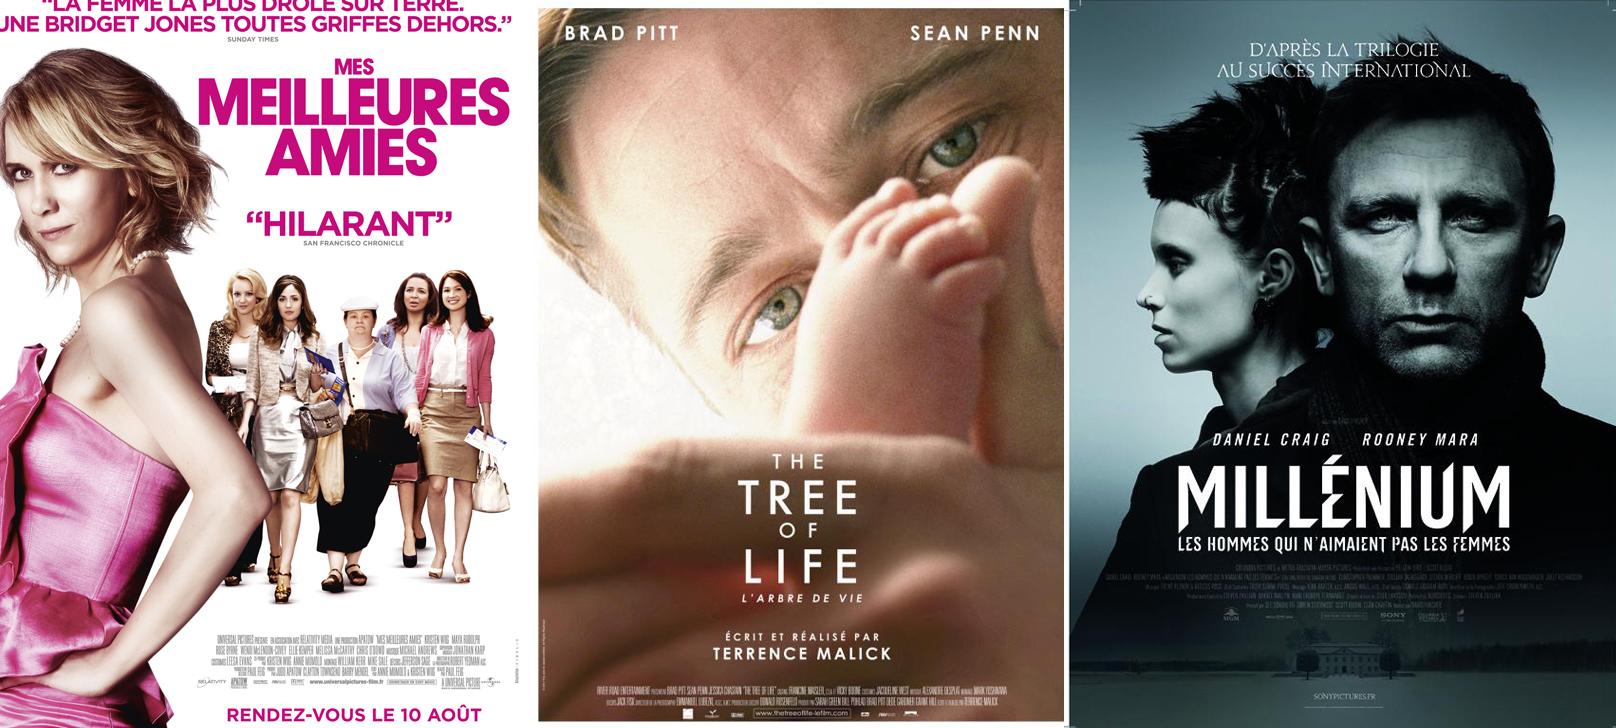 Les dix meilleurs films de 2011 selon l'American Film Institute